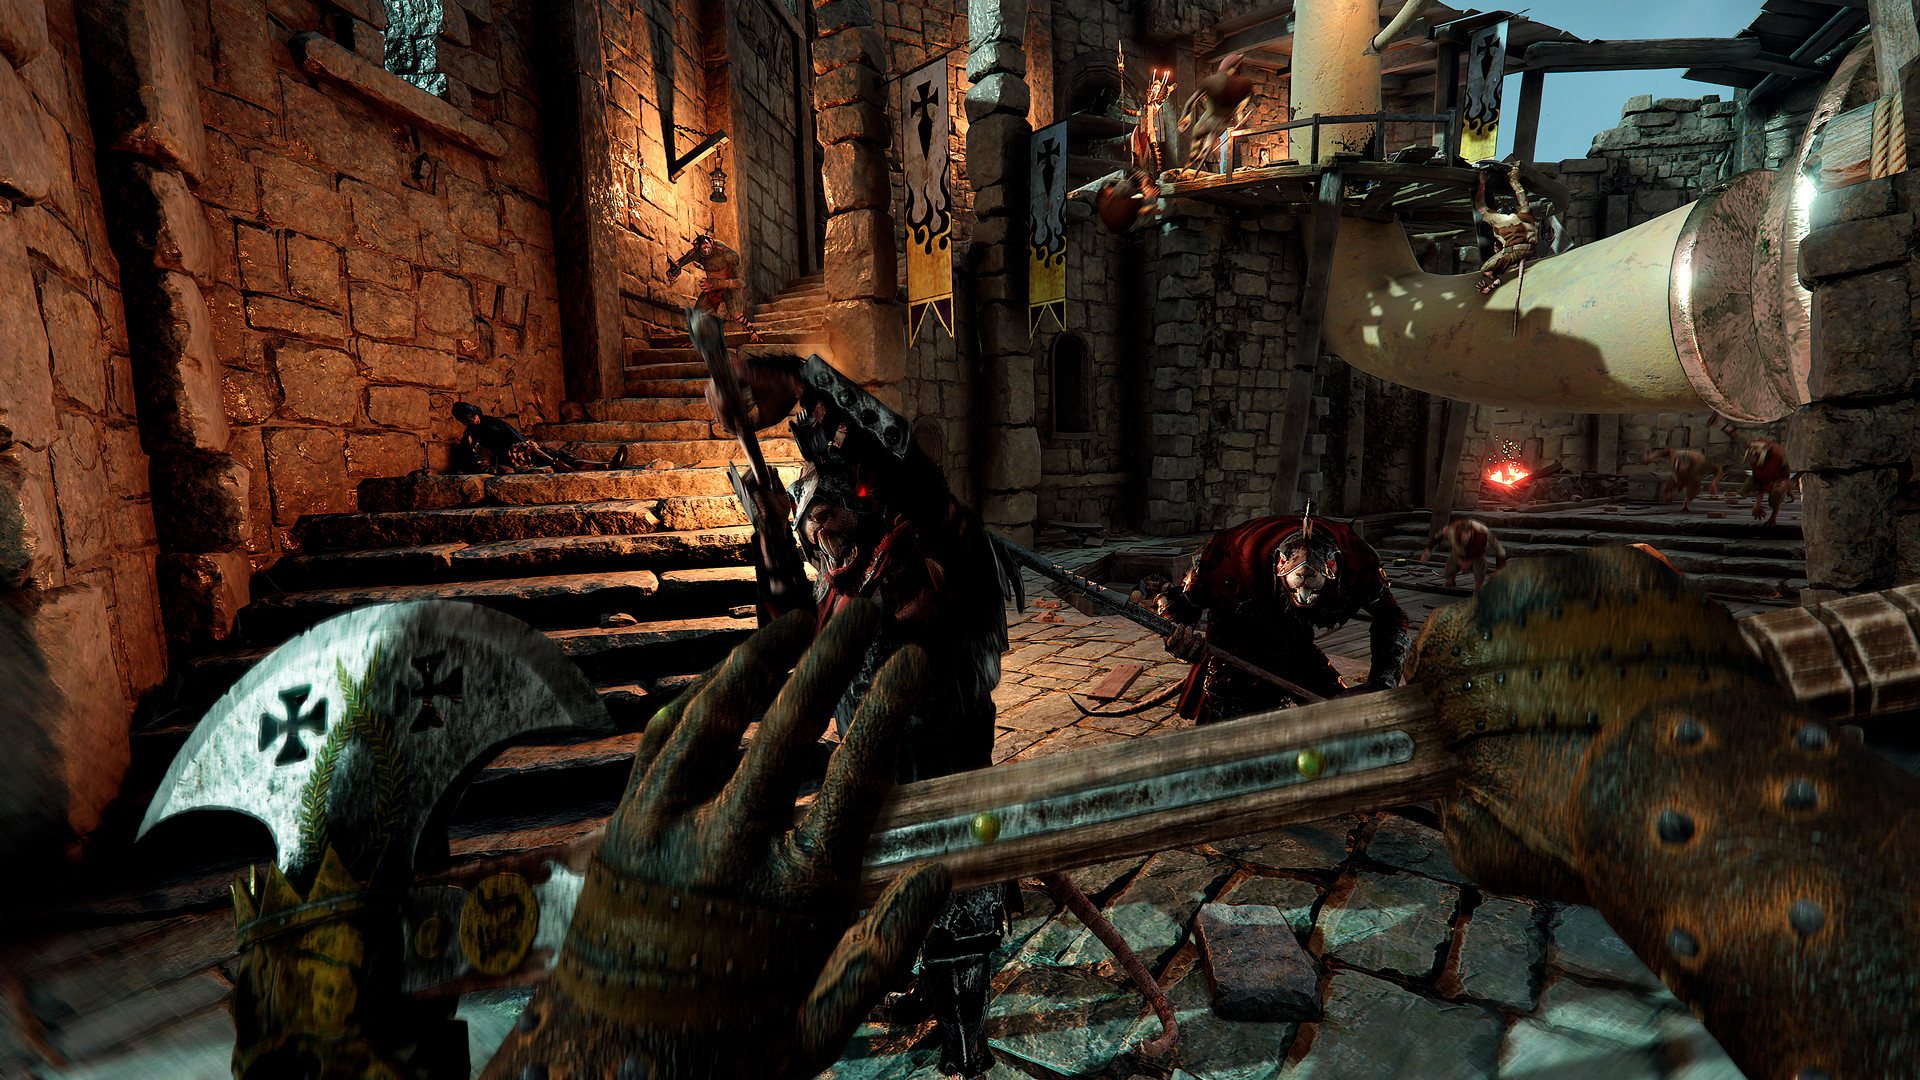 Warhammer: Vermintide 2 - Back To Ubersreik DLC EU Steam Altergift